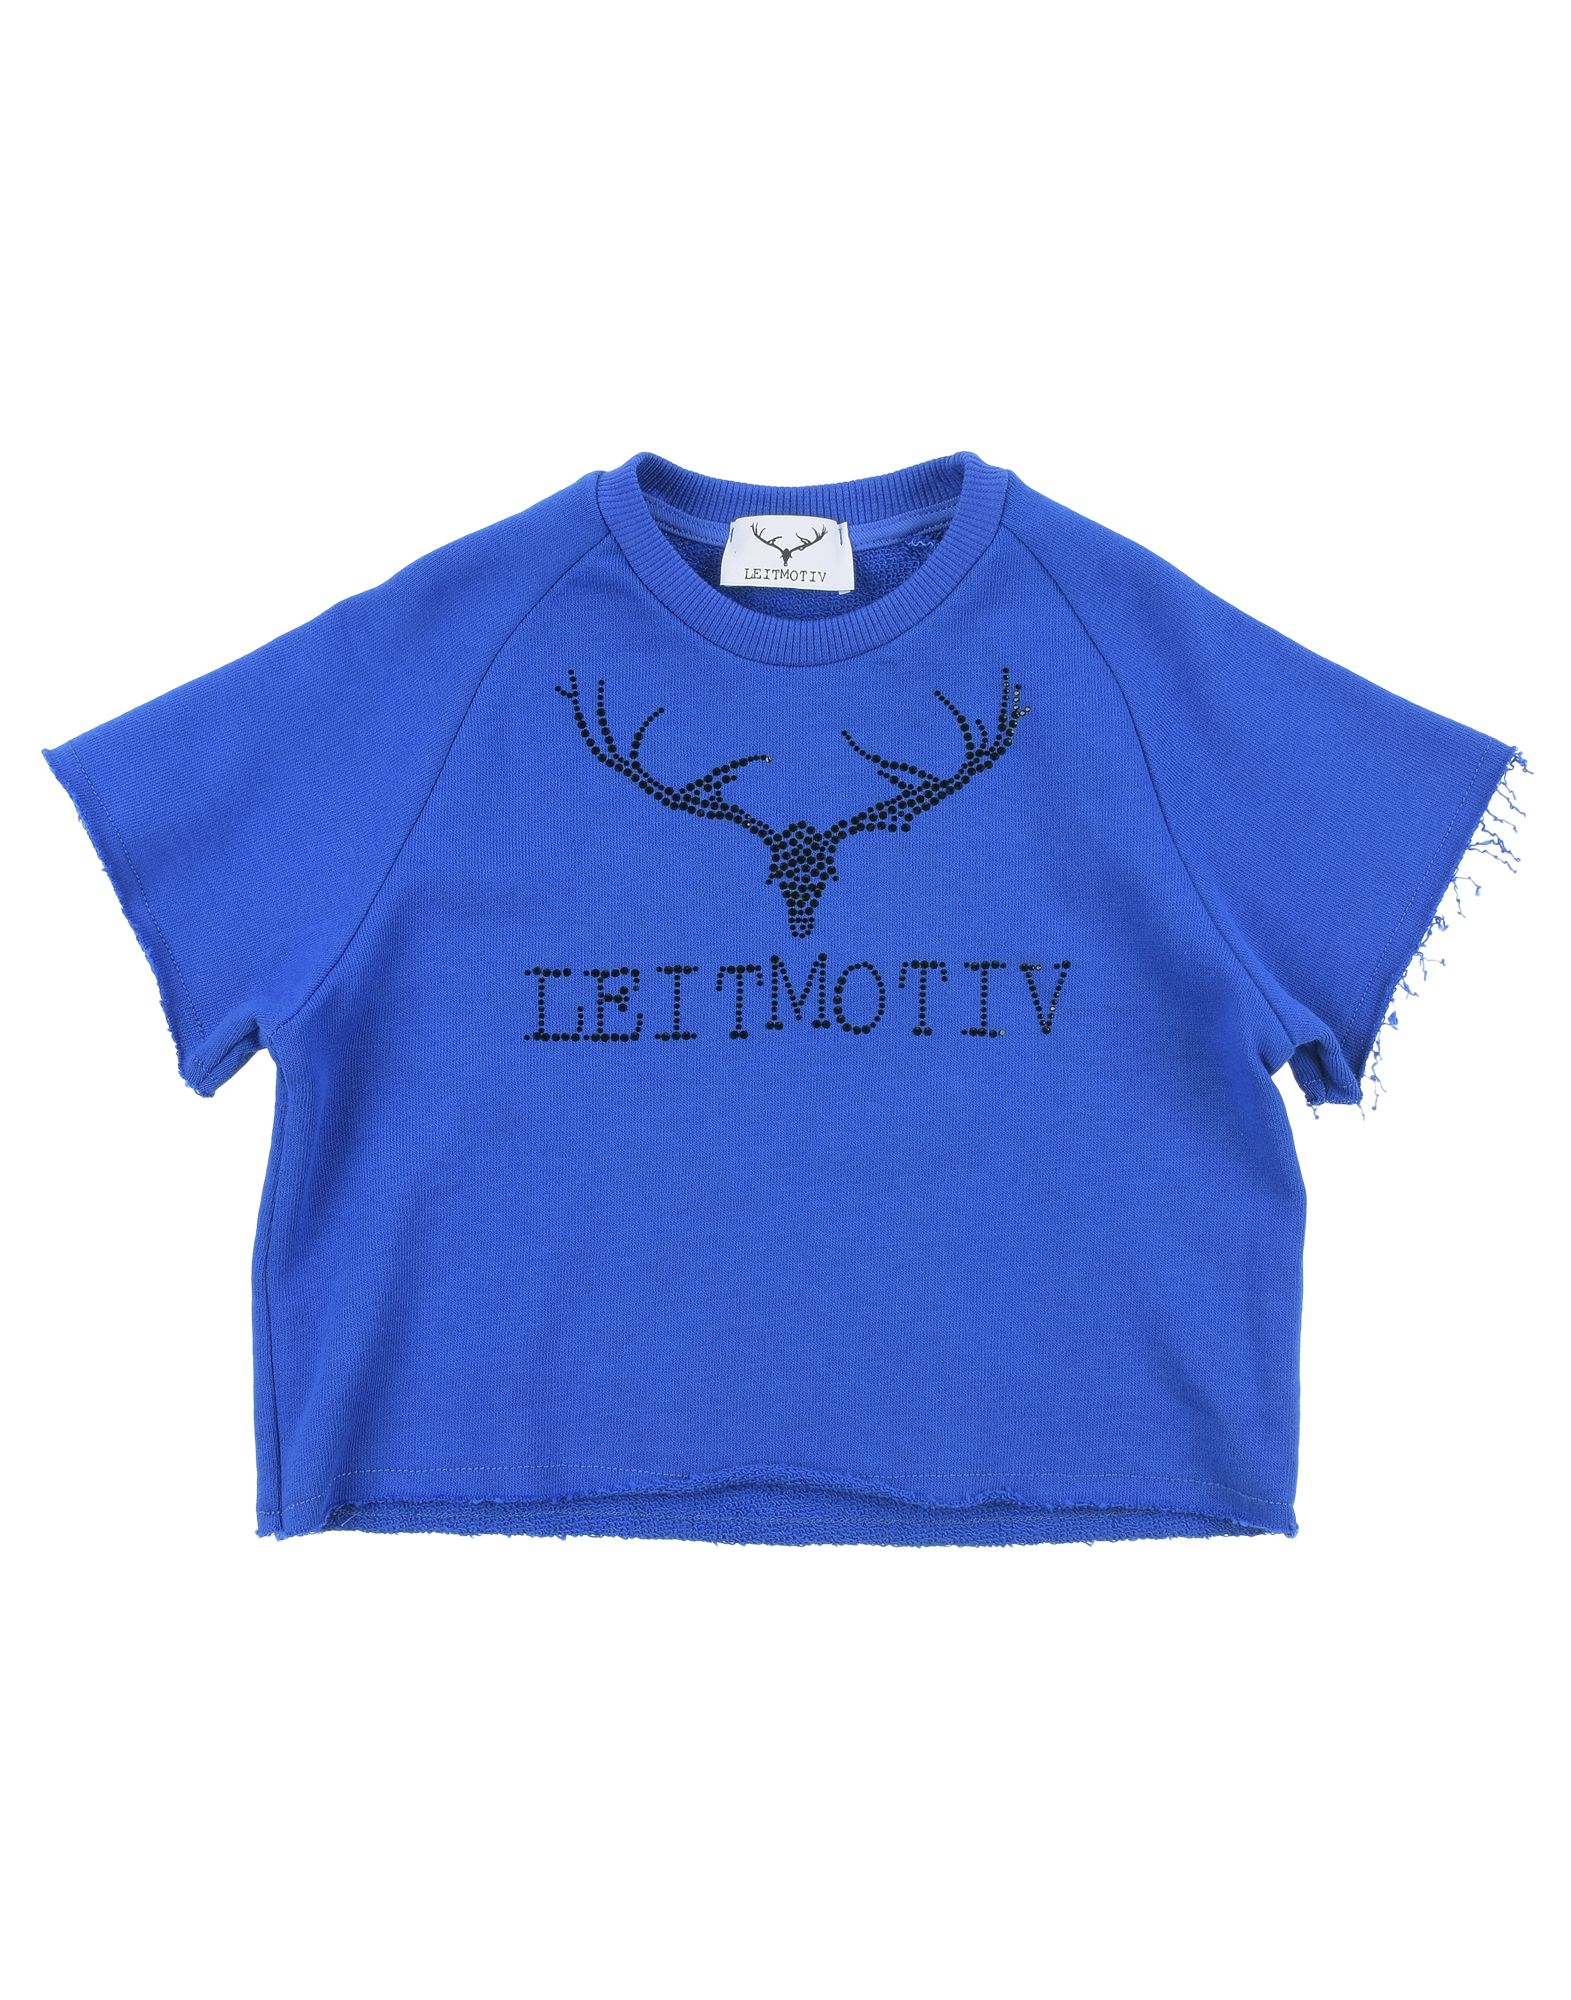 Leitmotiv Kids' Sweatshirts In Blue